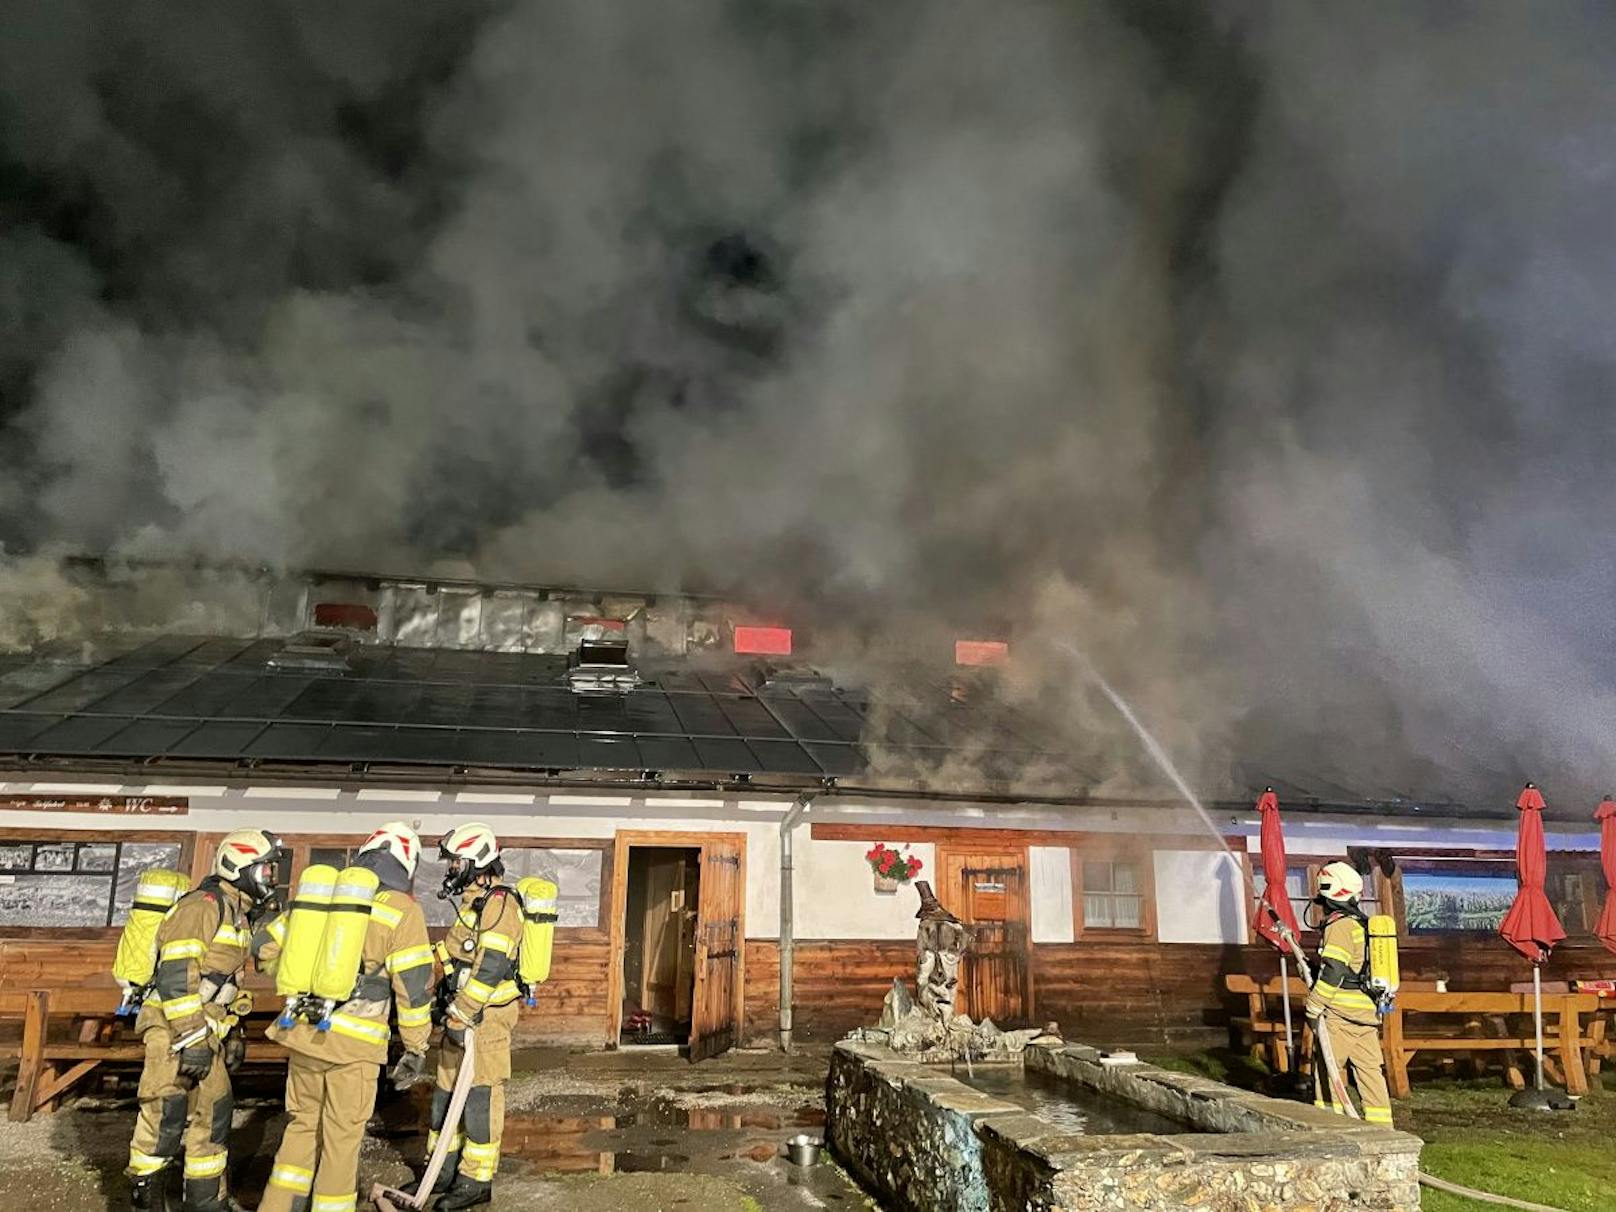 Großeinsatz in Kaprun! Eine Almhütte ging in Flammen auf – mehrere Personen wurden verletzt, darunter auch ein Feuerwehrmann.